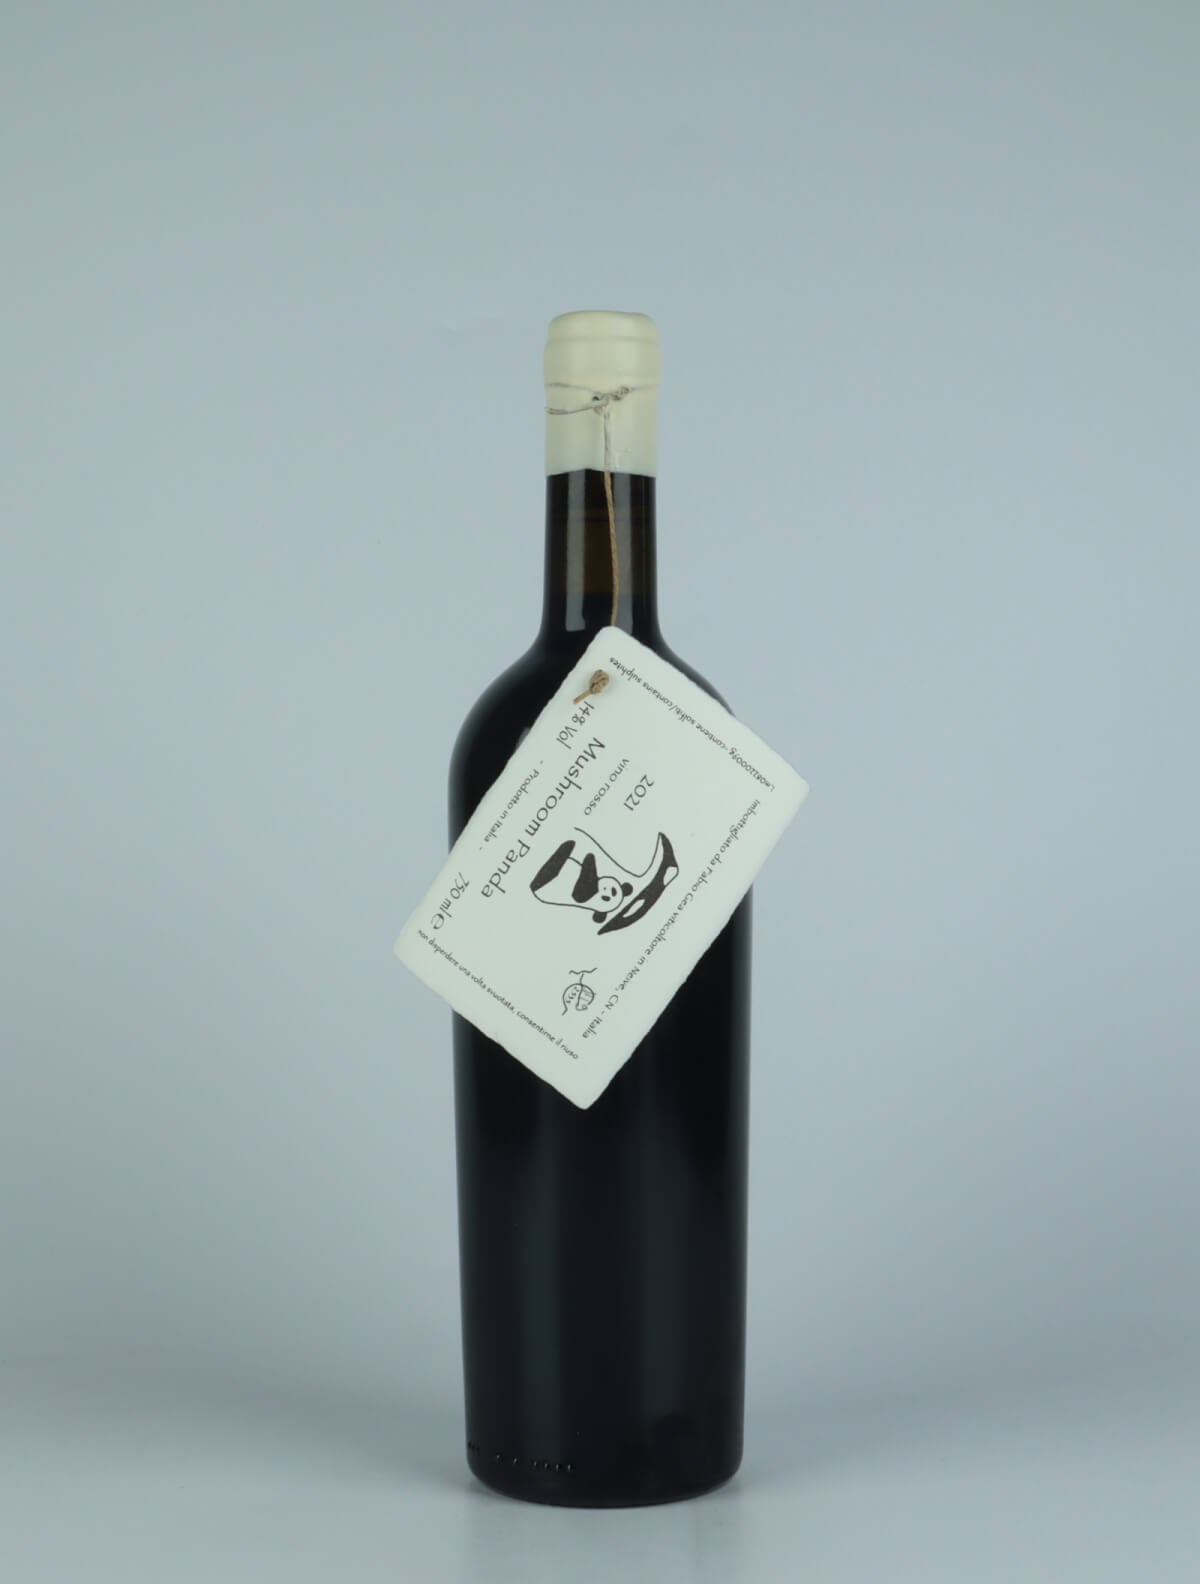 A bottle 2021 Mushroom Panda Red wine from Fabio Gea, Piedmont in Italy